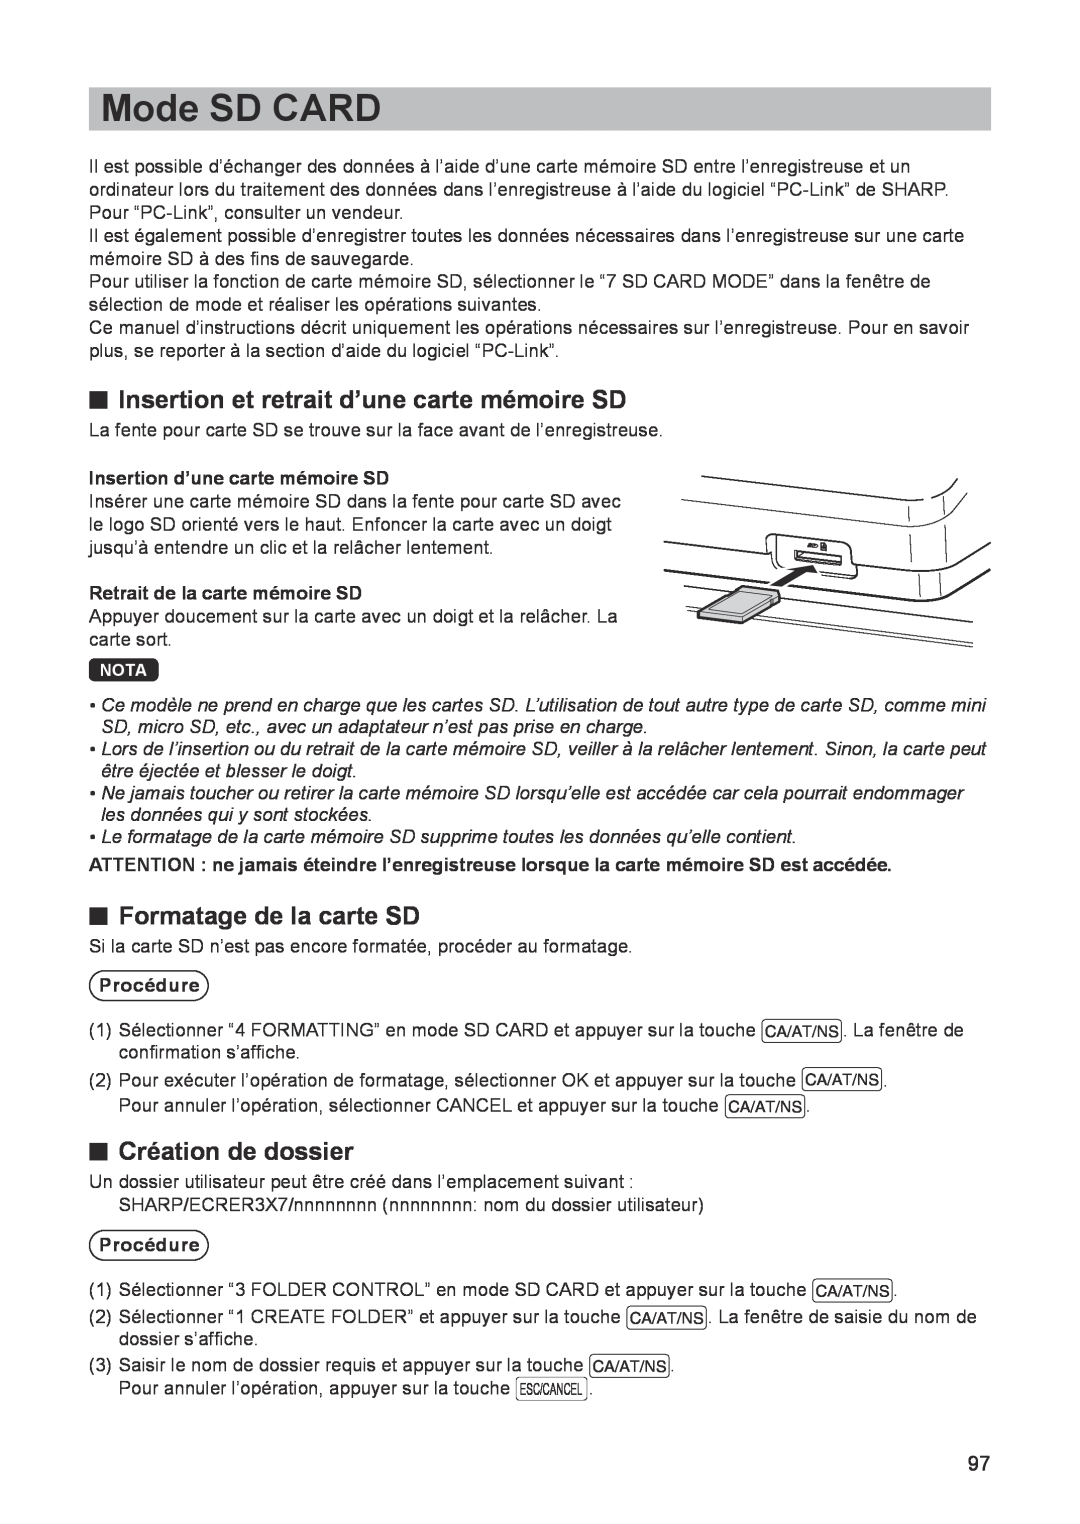 Sharp ER-A347 Mode SD CARD, Insertion et retrait d’une carte mémoire SD, Formatage de la carte SD, Création de dossier 